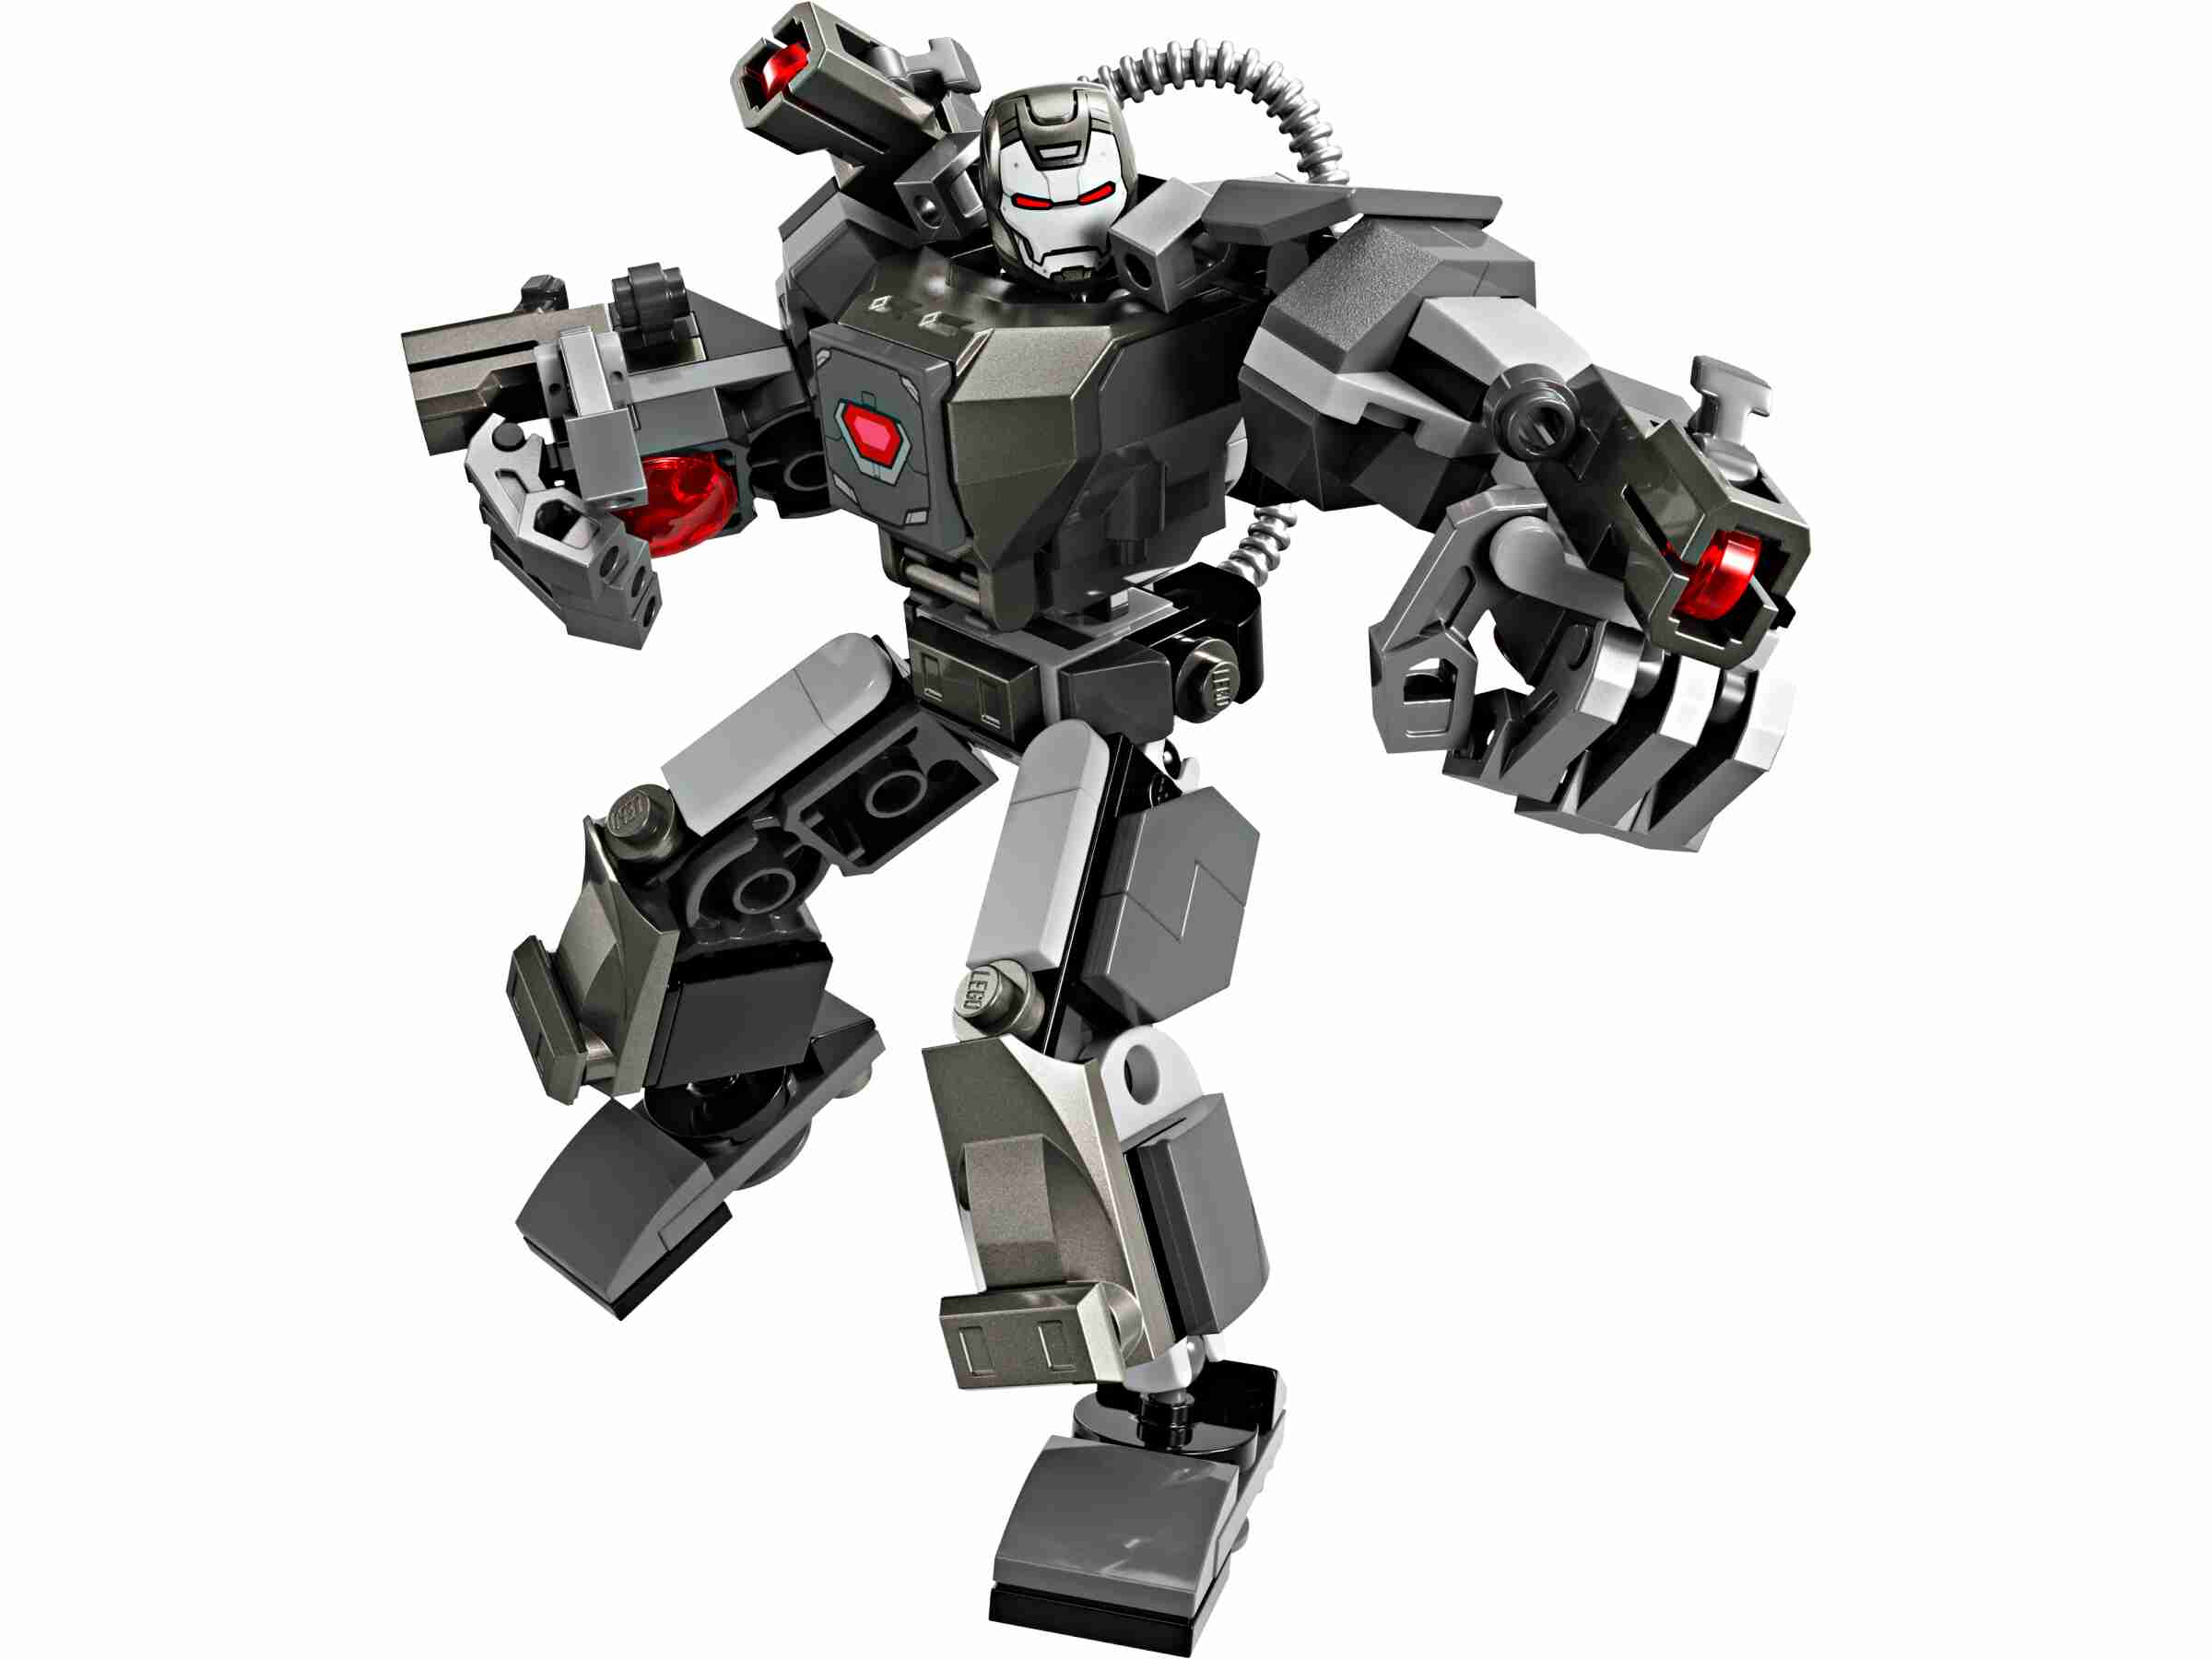 LEGO 76277 Marvel War Machine Mech, Bewegliche Gelenke, 3 Shooter, 1 Minifigur